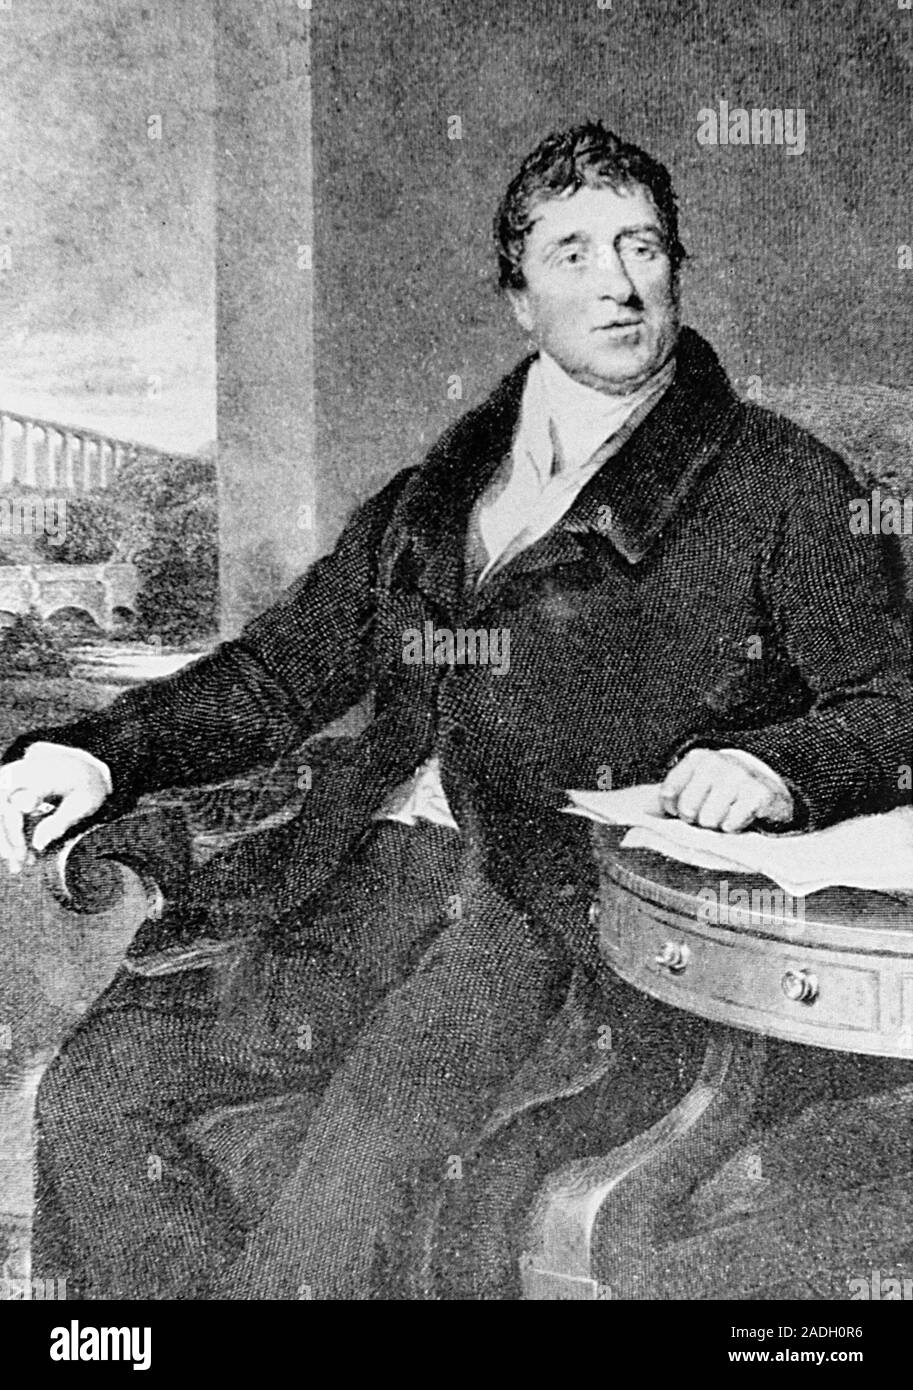 Grabado de Thomas Telford (1757-1834), ingeniero civil británico. Telford  fue el hijo de un pastor, y primero fue aprendiz de albañil. Su fir  Fotografía de stock - Alamy